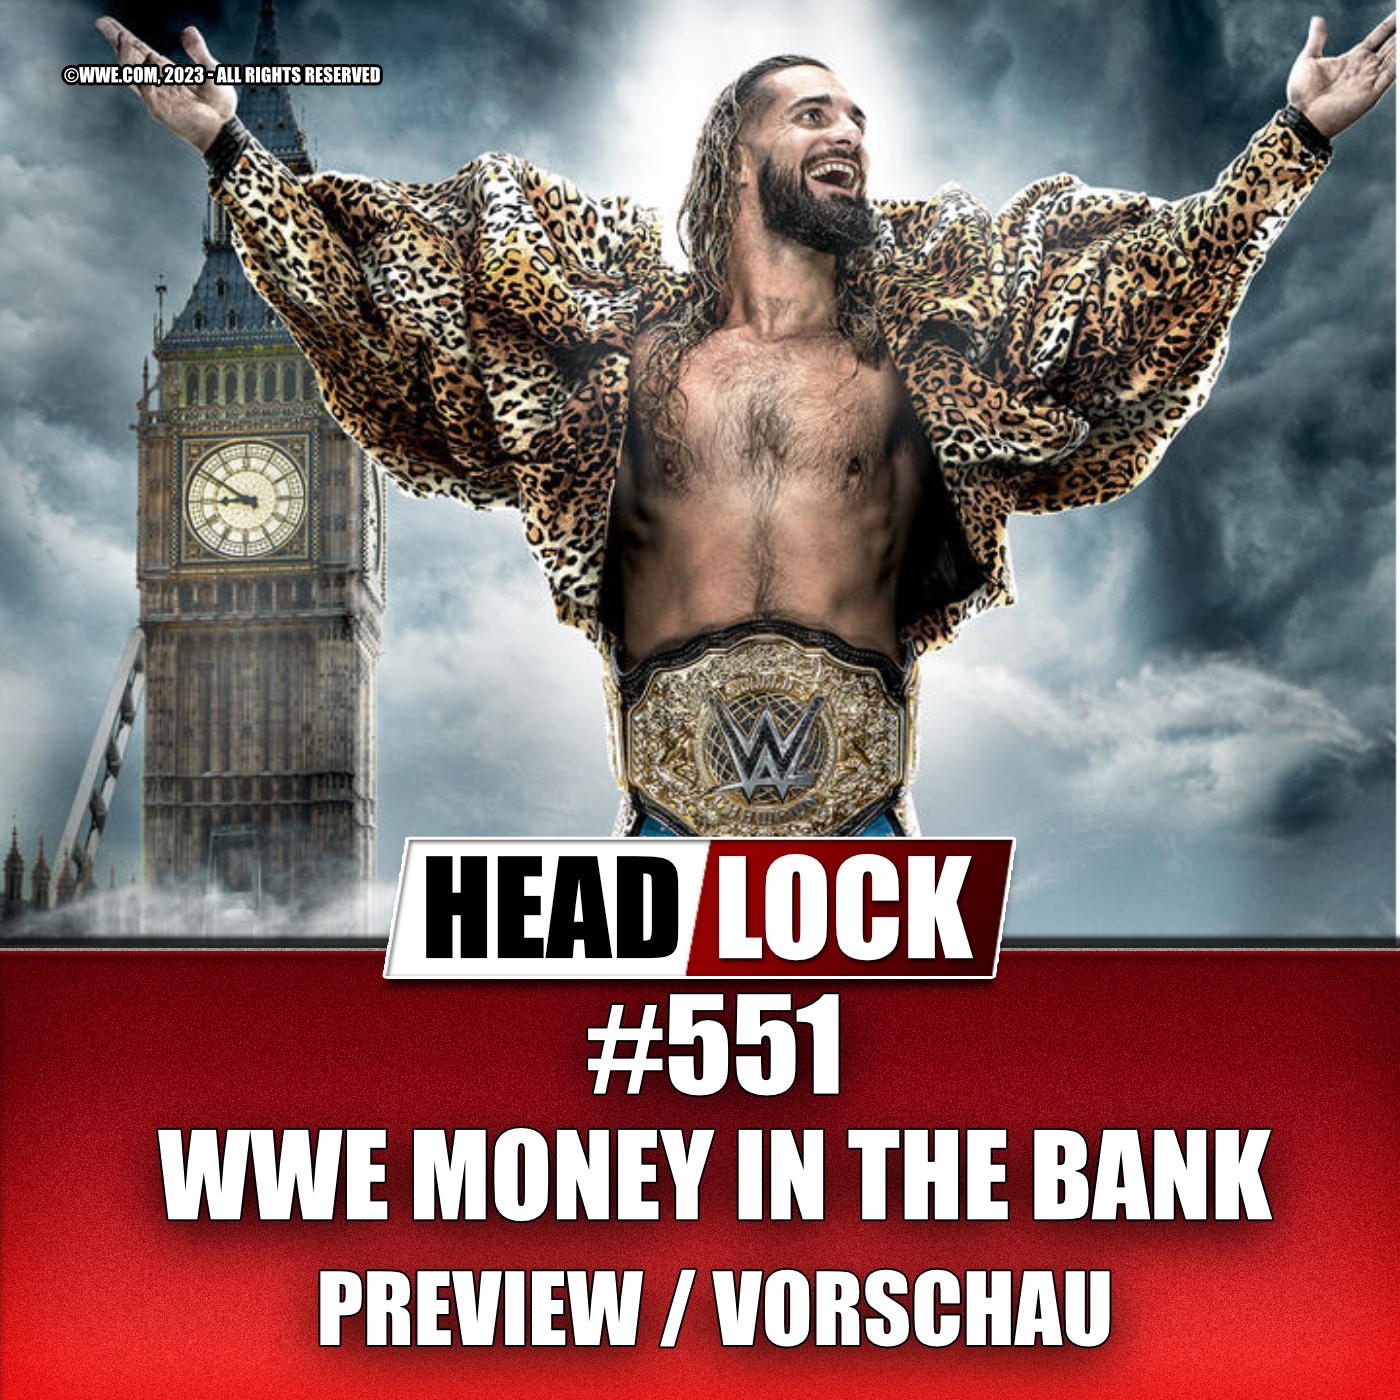 #551: WWE Money in the Bank 2023 (Preview / Vorschau) - KOFFER-CATCH UND CIVIL WAR!